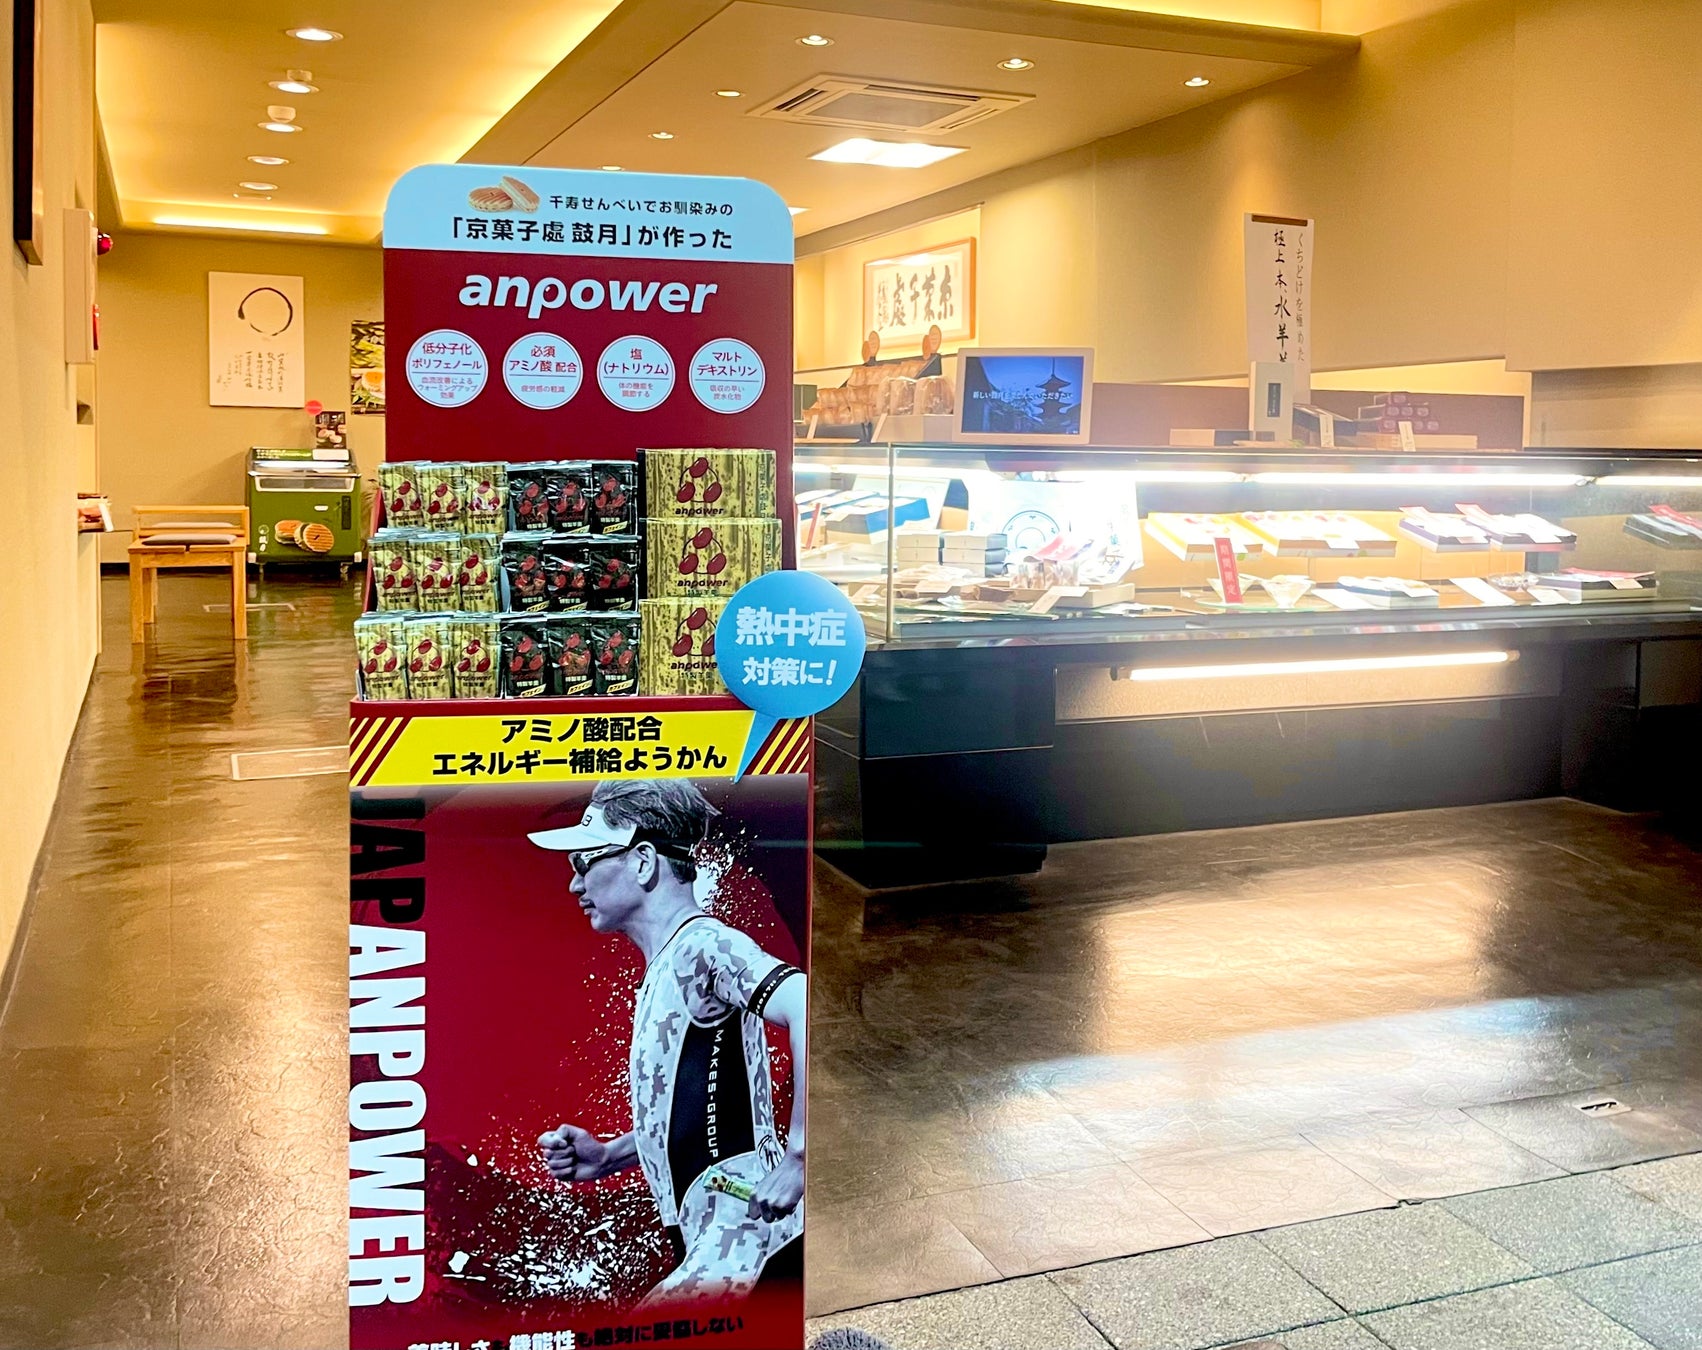 ラーメン通販サイト「宅麺.com」運営のグルメエックス、 小売店や飲食店への提供など、新たな販売展開を発表